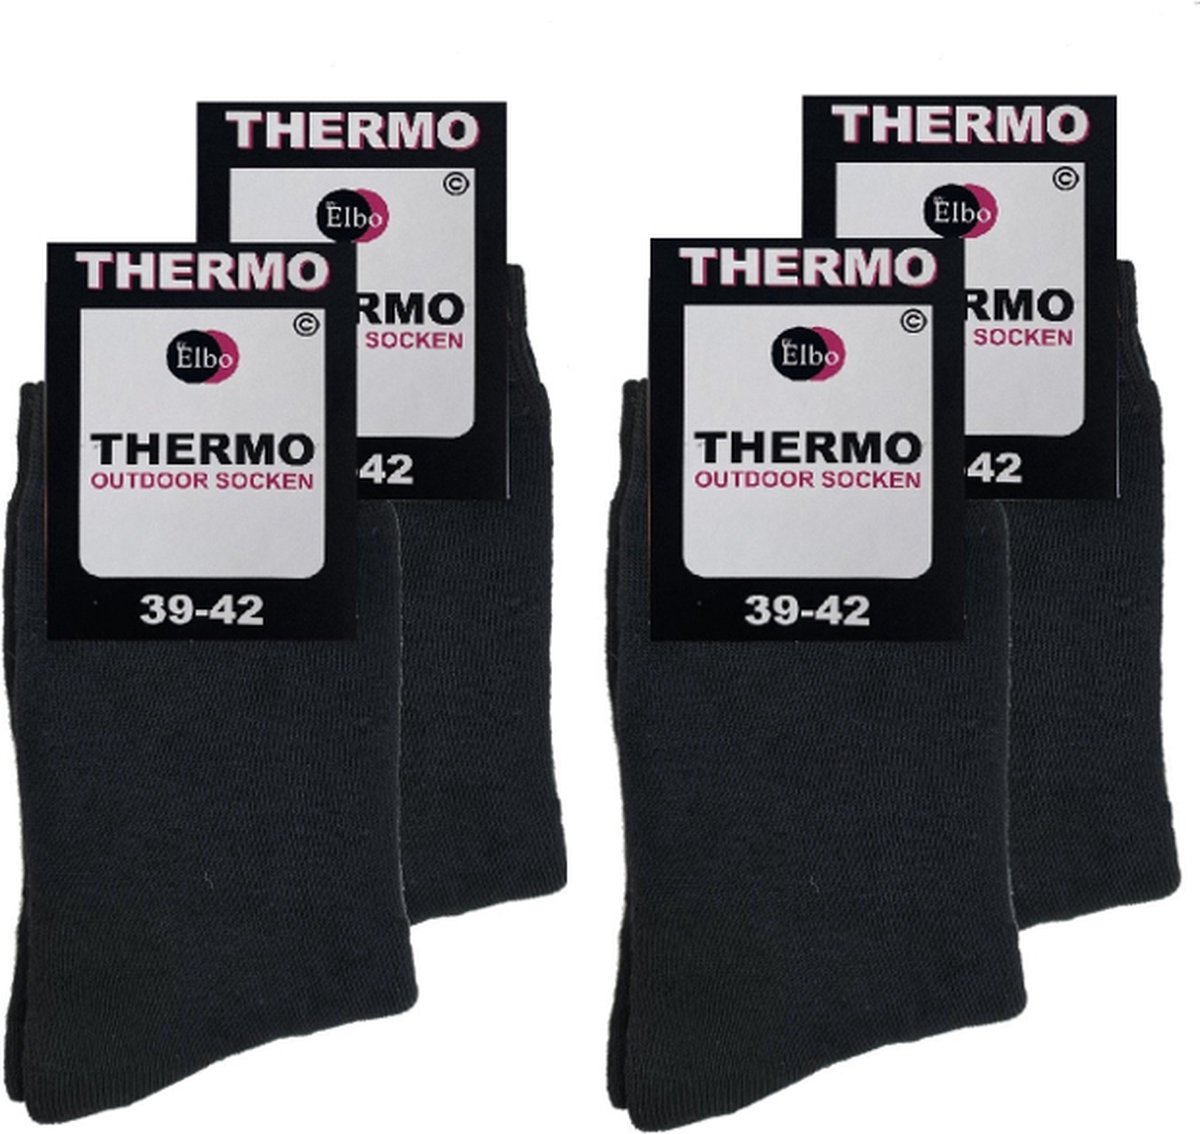 Thermo sokken ByElbo – 4pack – maat 39-42 – badstof voering – zwart - Sport Thermo Sok - Thermisch - Warm Sock - Wandelsokken - schaatssokken - Winter Ski sokken -